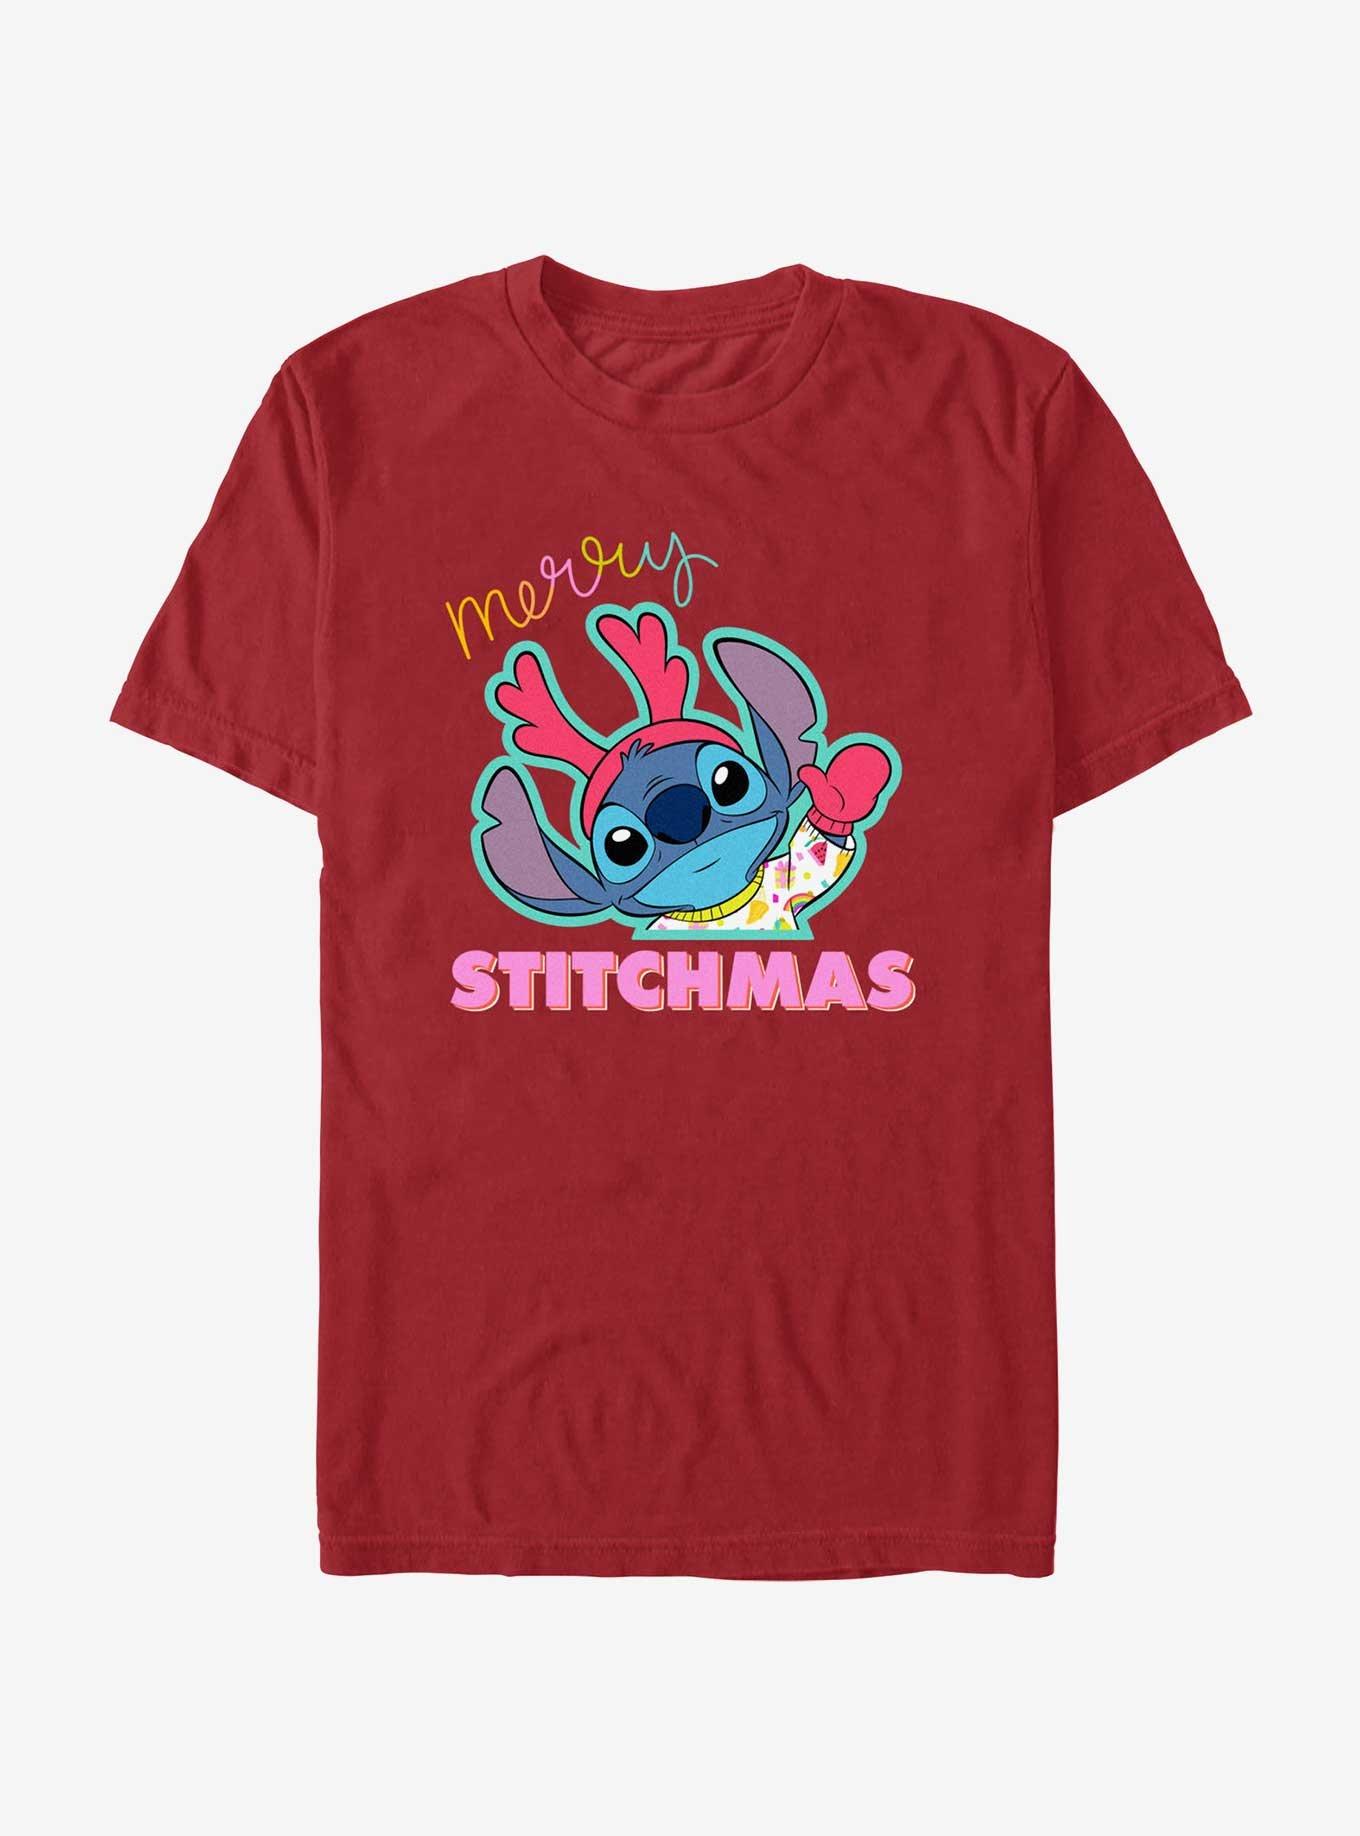 Disney Lilo & Stitch Merry Stitchmas T-Shirt